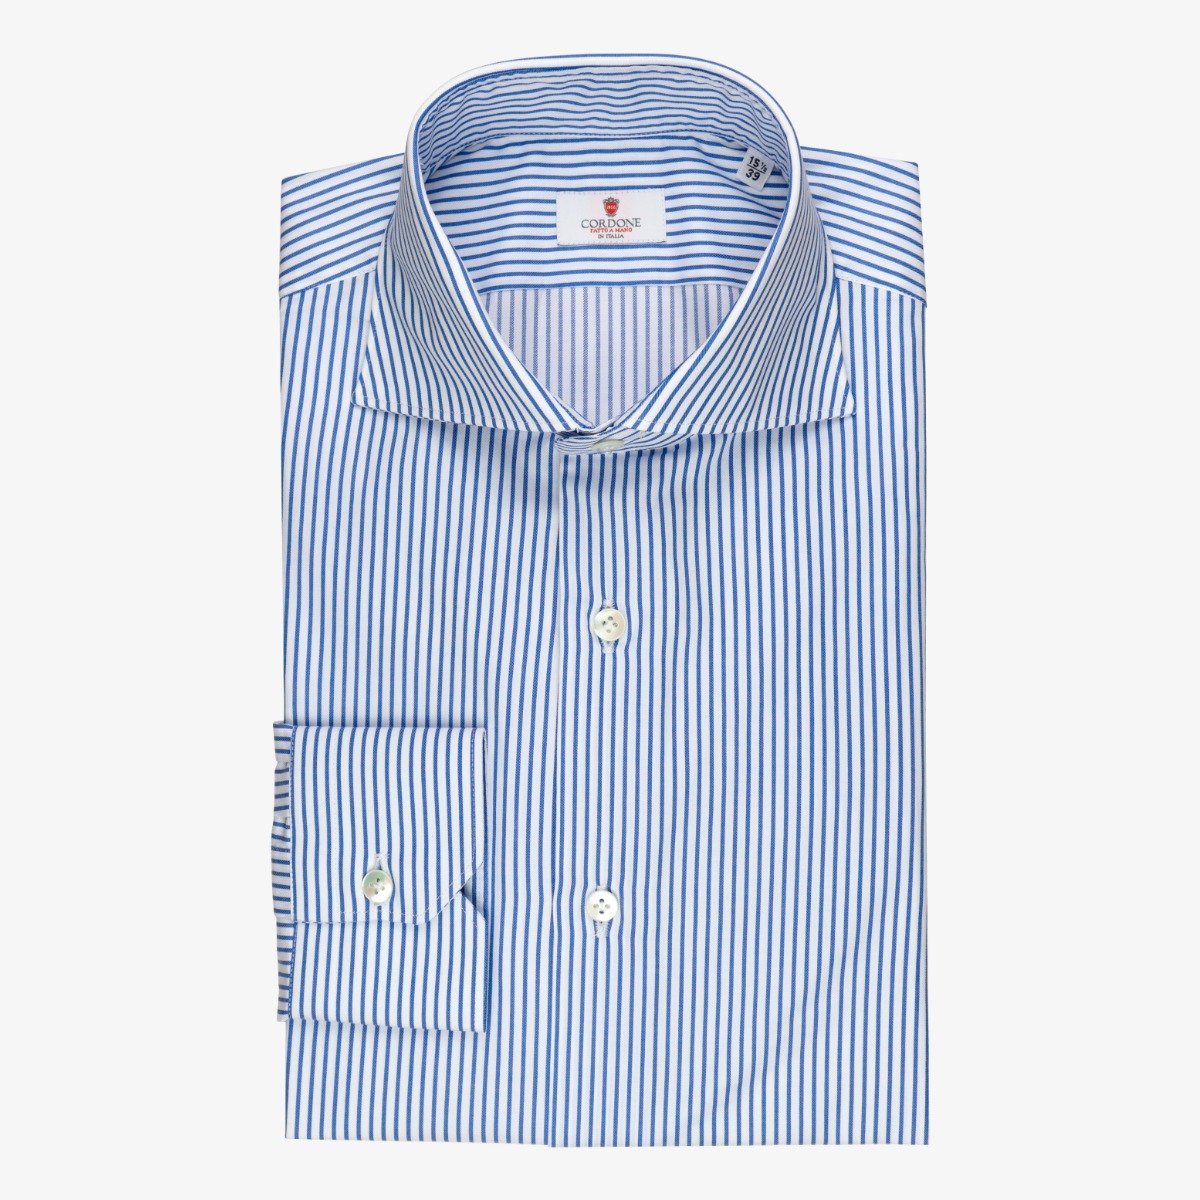 Cordone 1956 blue slim fit striped twill men's dress shirt